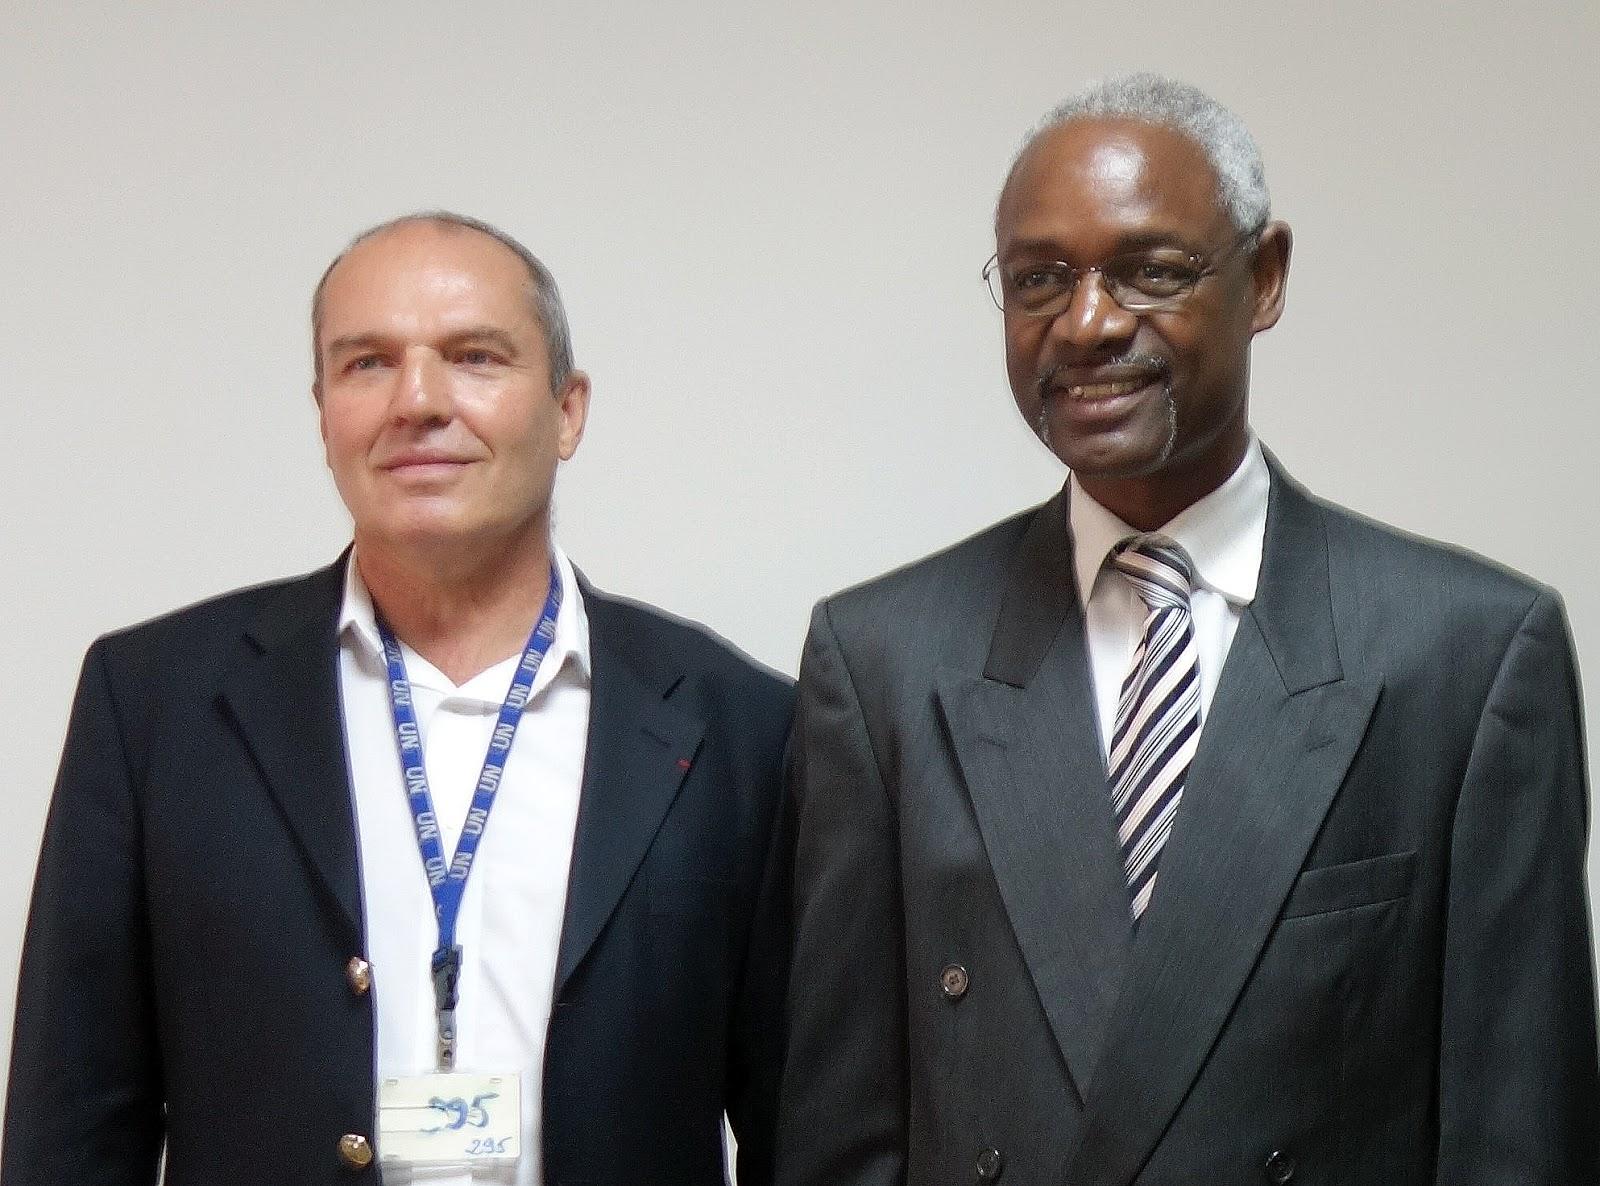 Le délégué général de la Fondation reçu par le Conseiller spécial des Nations-Unis pour le Sahel, Ibrahim Thiaw